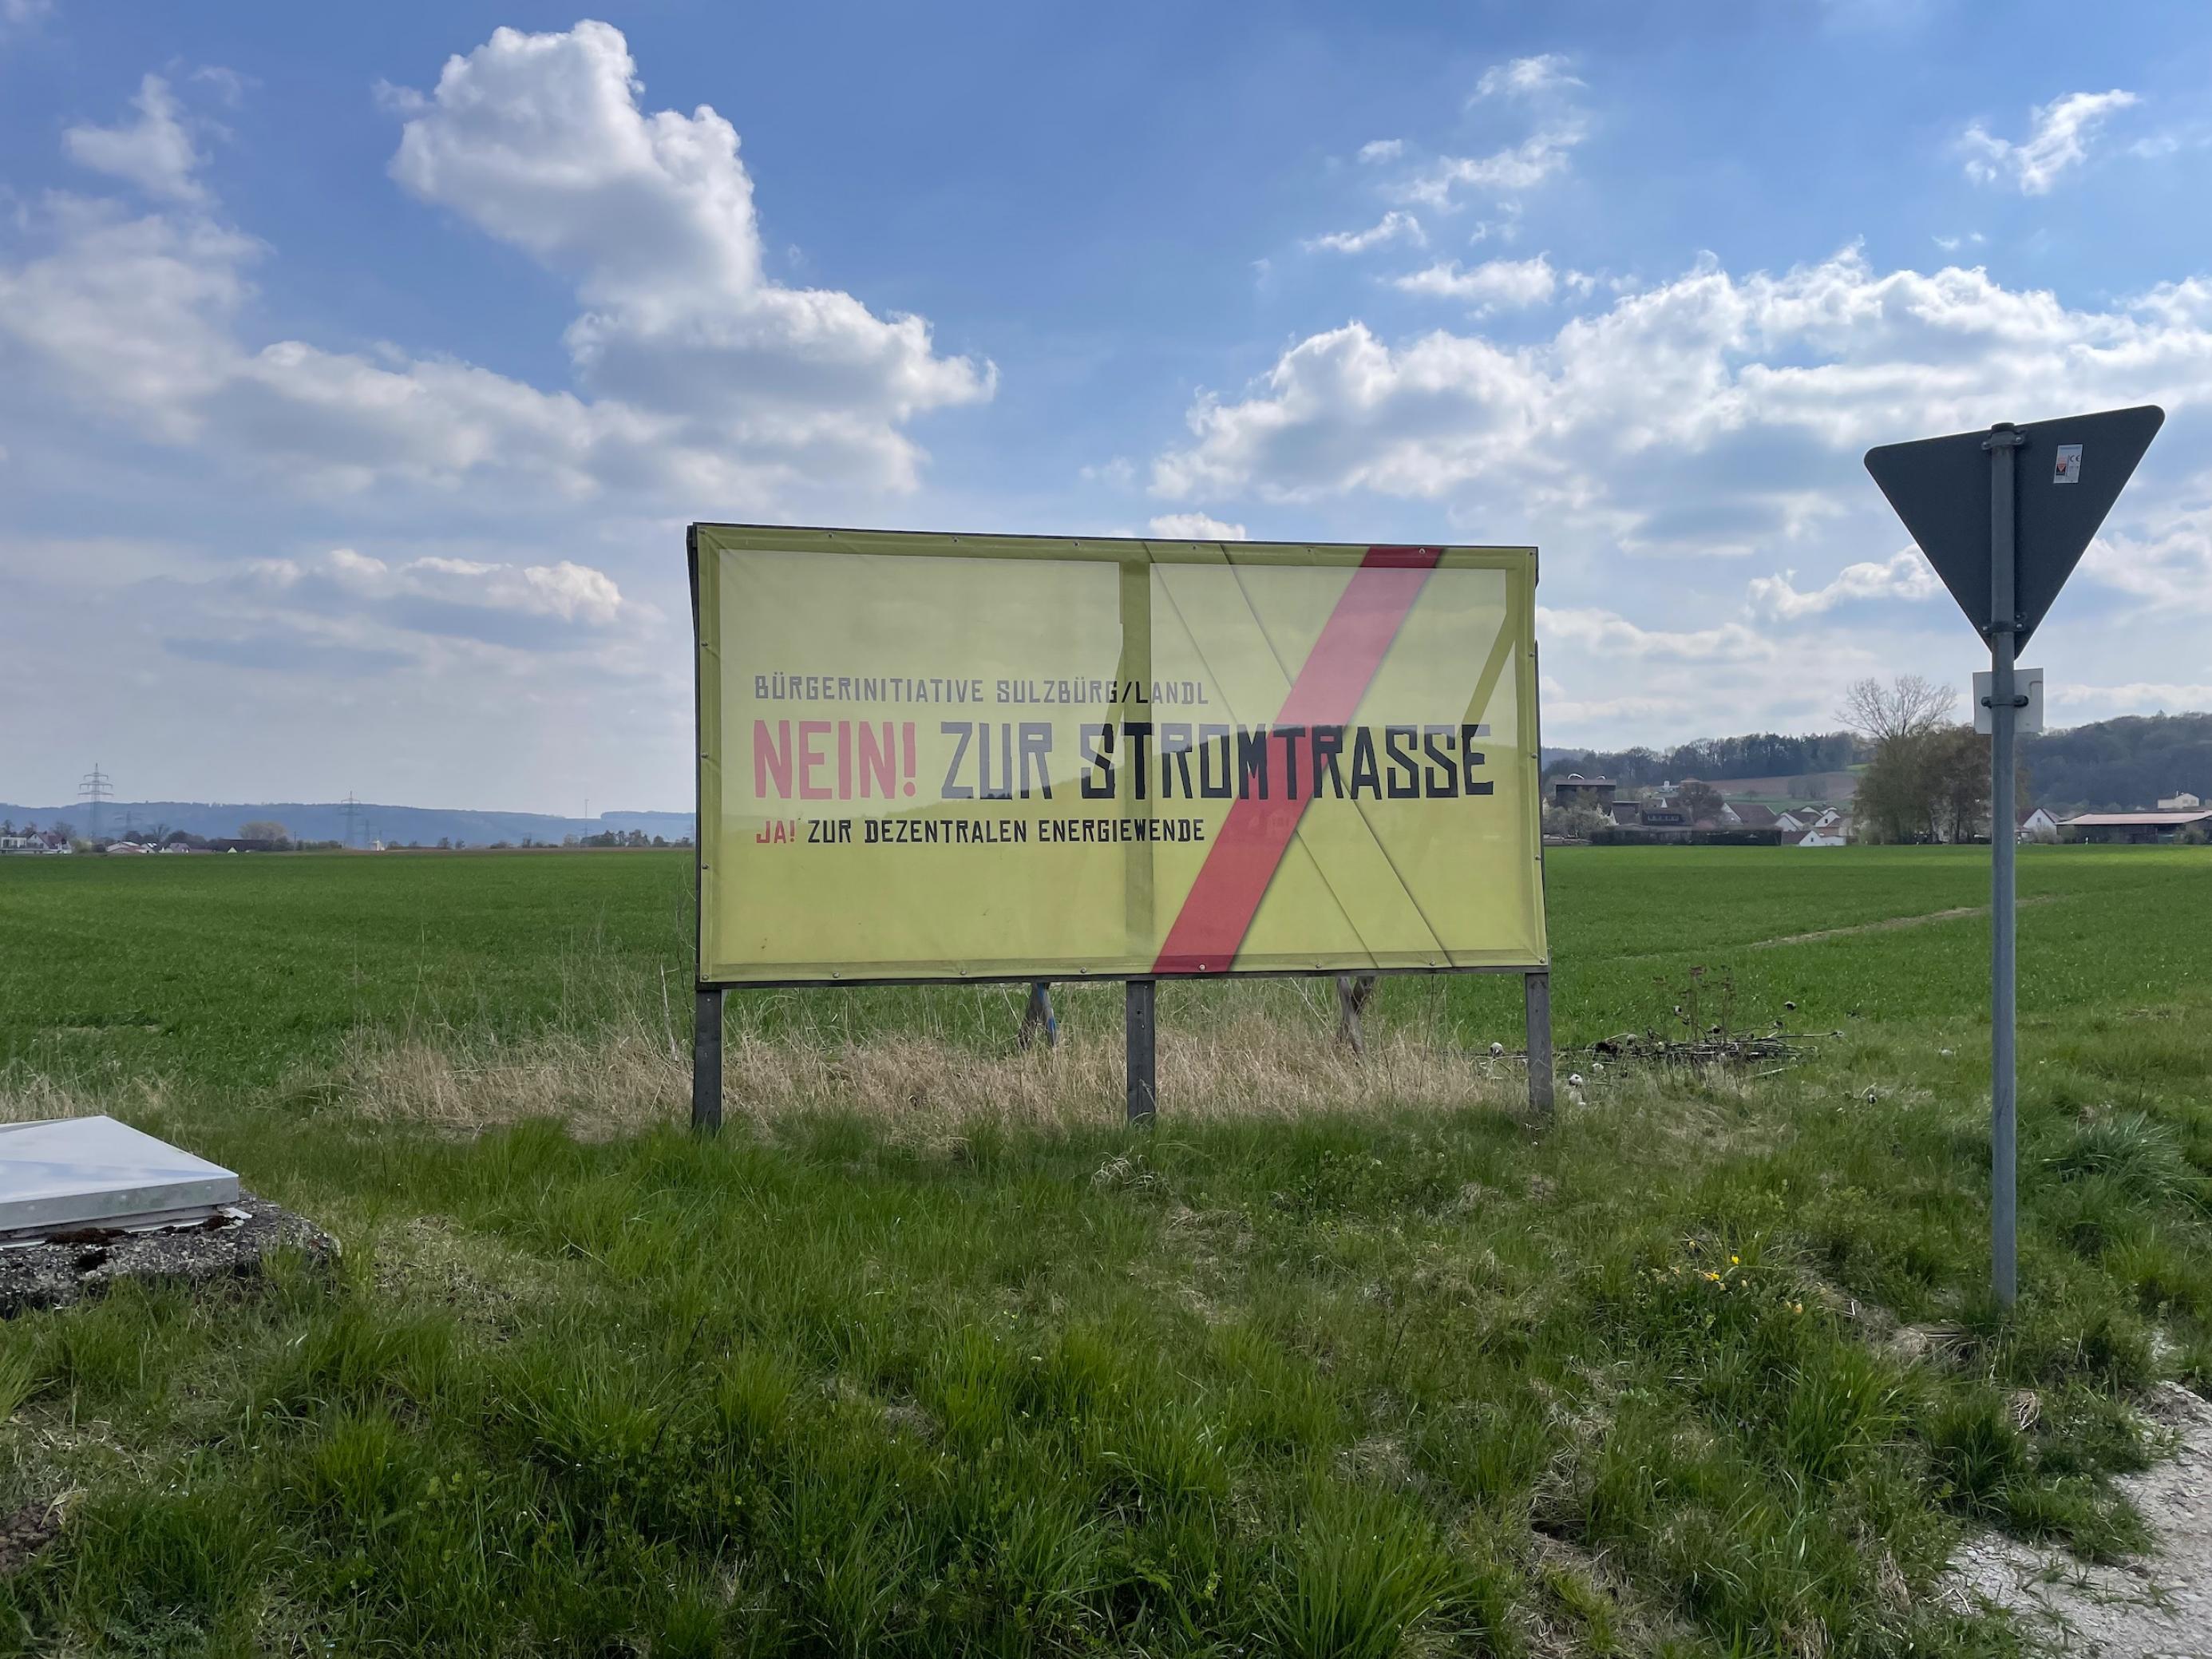 Schild auf freier Landschaft, „Bürgerinitiative Sulzbürg/Landl, Nein zur Stromtrasse, Ja zur Dezentralen Energiewende“